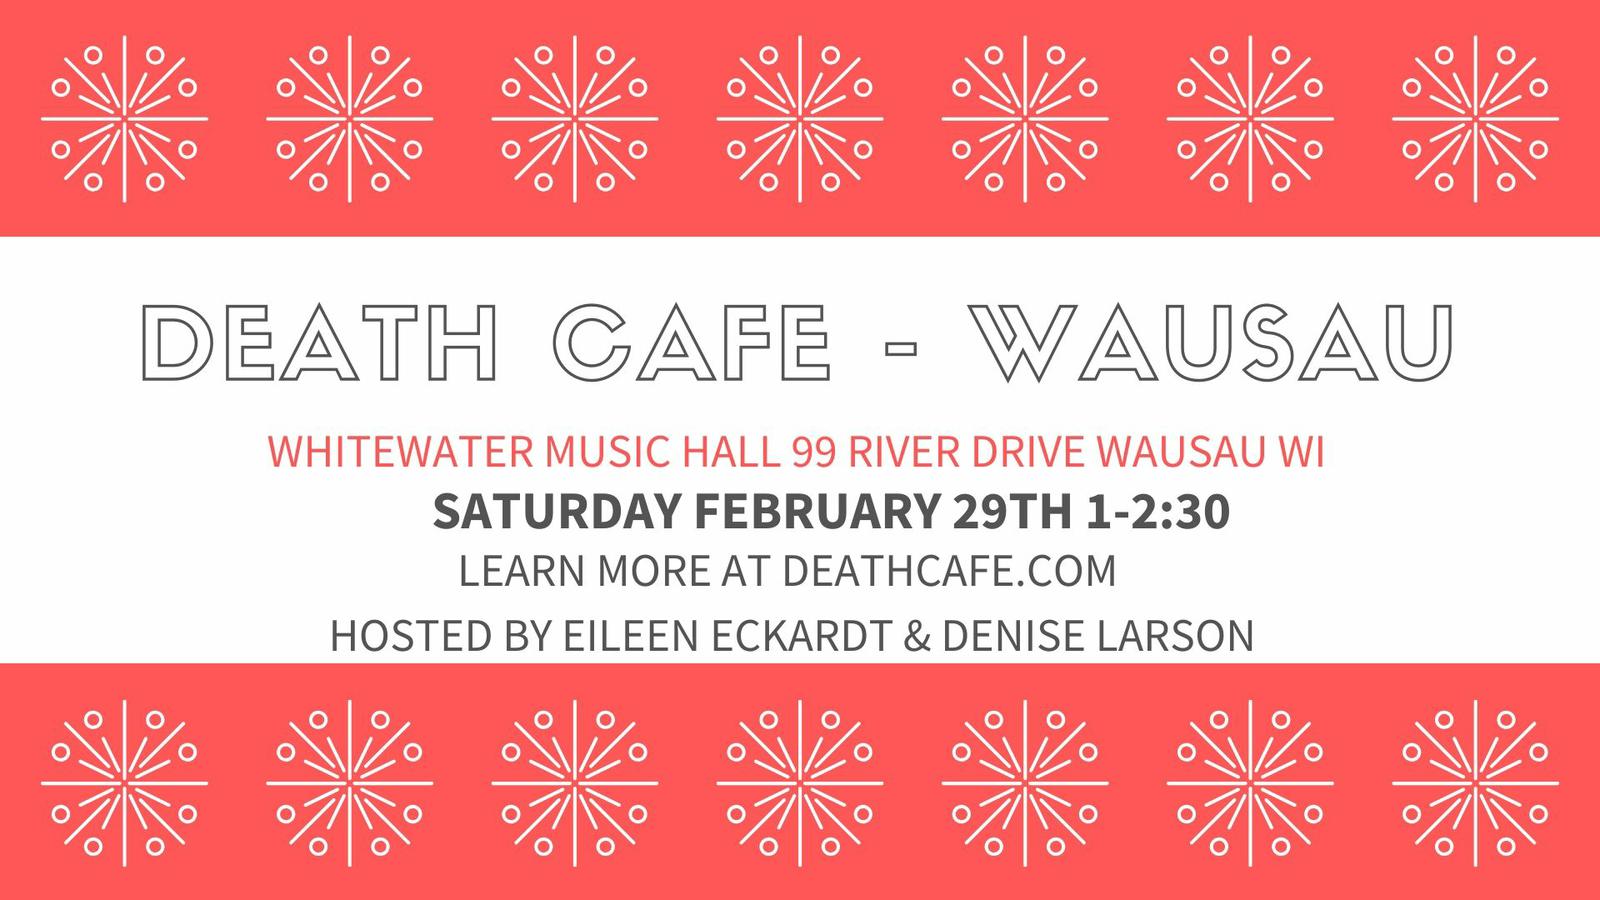 Death Cafe Wausau Feb 29 1-2:30